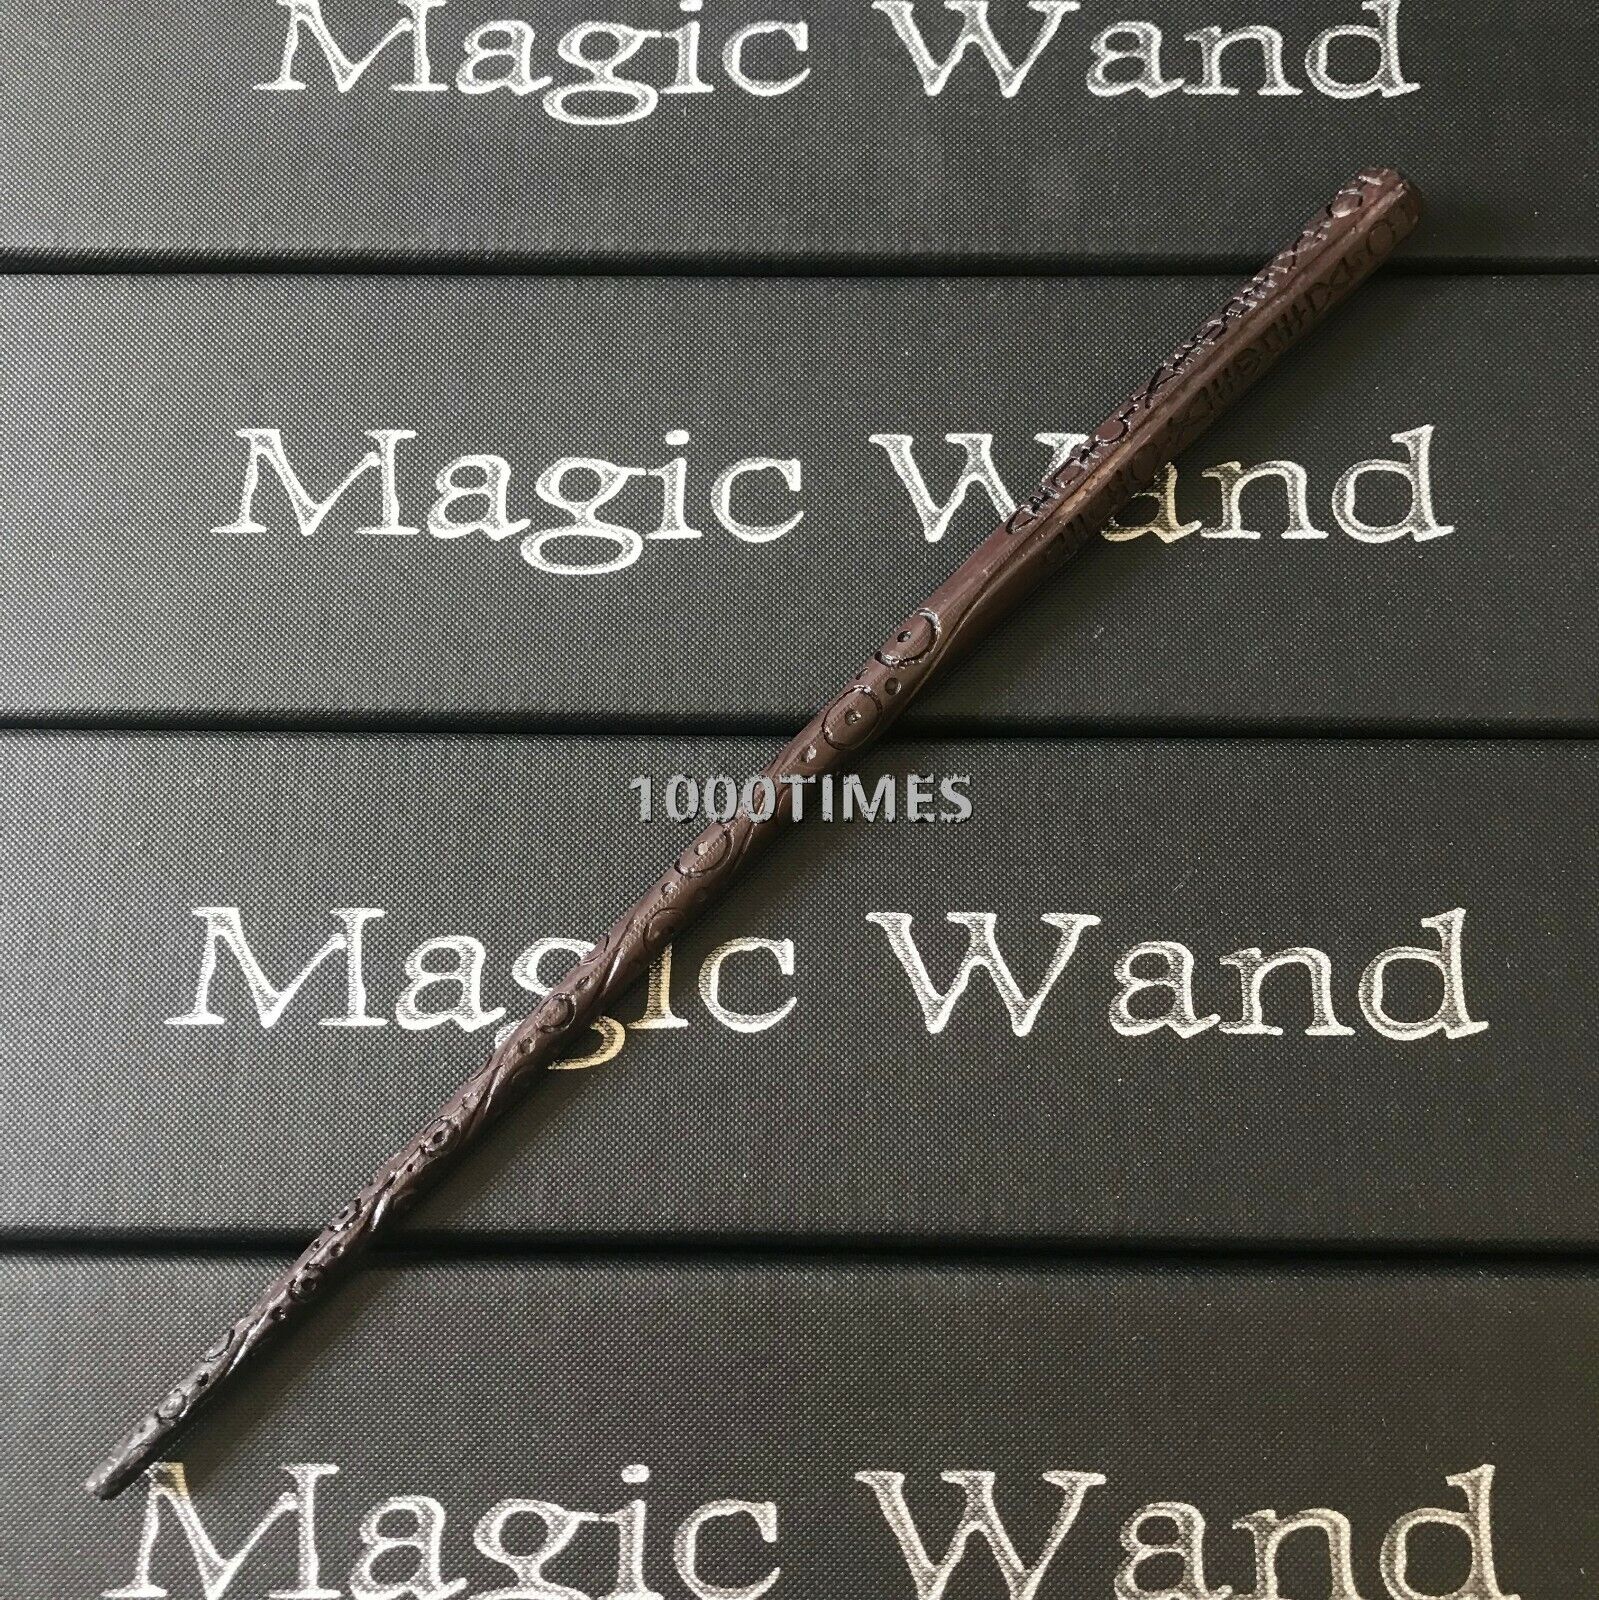 Harry Potter Sirius Black Magic Wand Cosplay Costume LARP